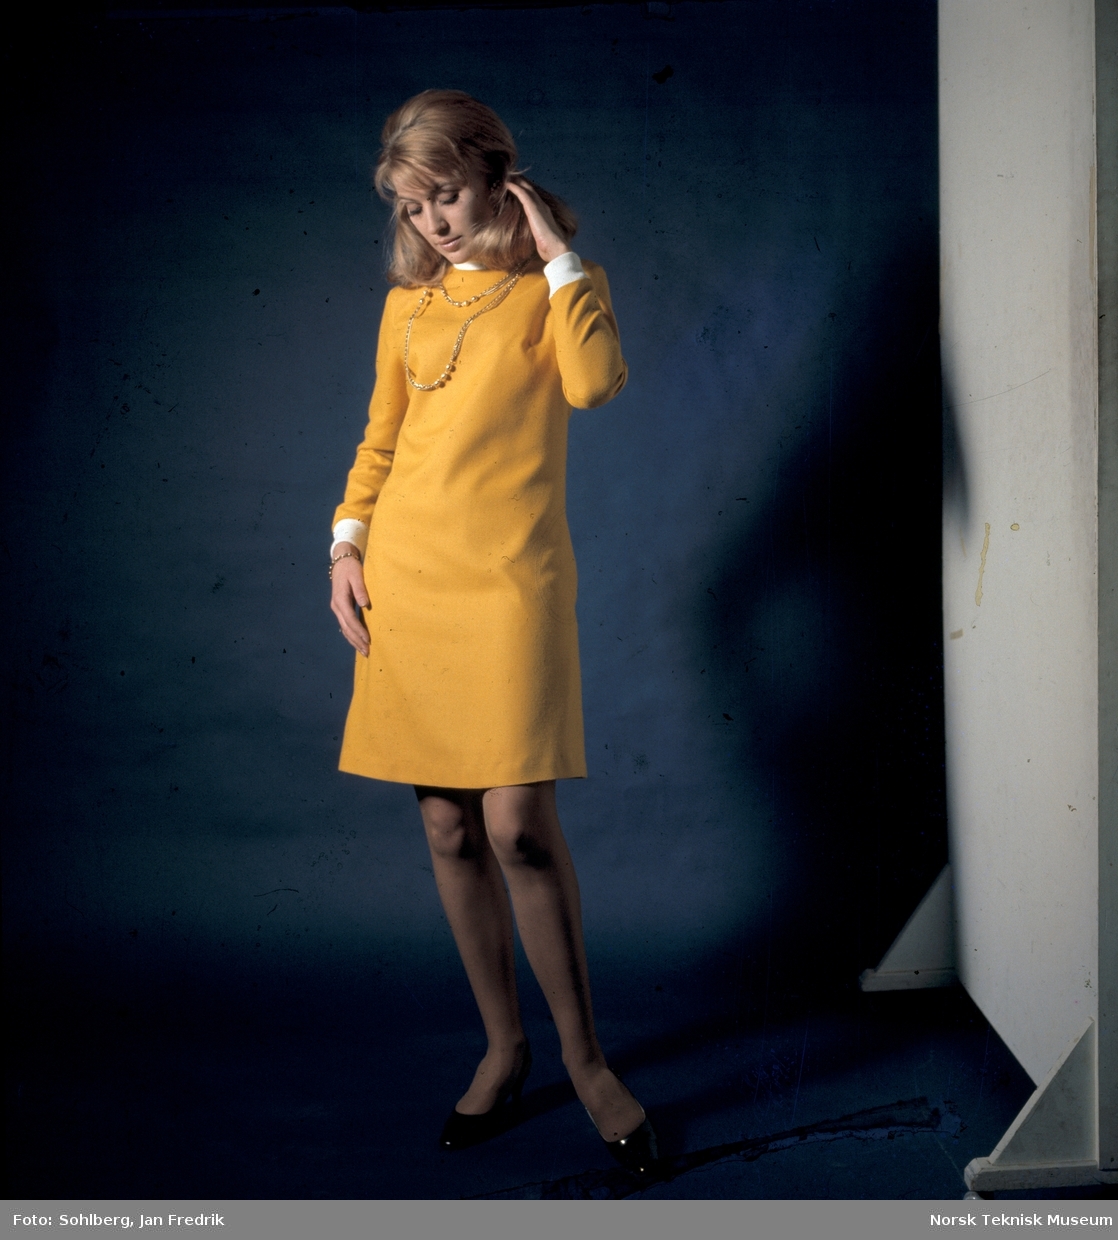 Tidlig norsk motefotografi. Kvinnelig modell poserer i en gul kjole mot blå bakgrunn.